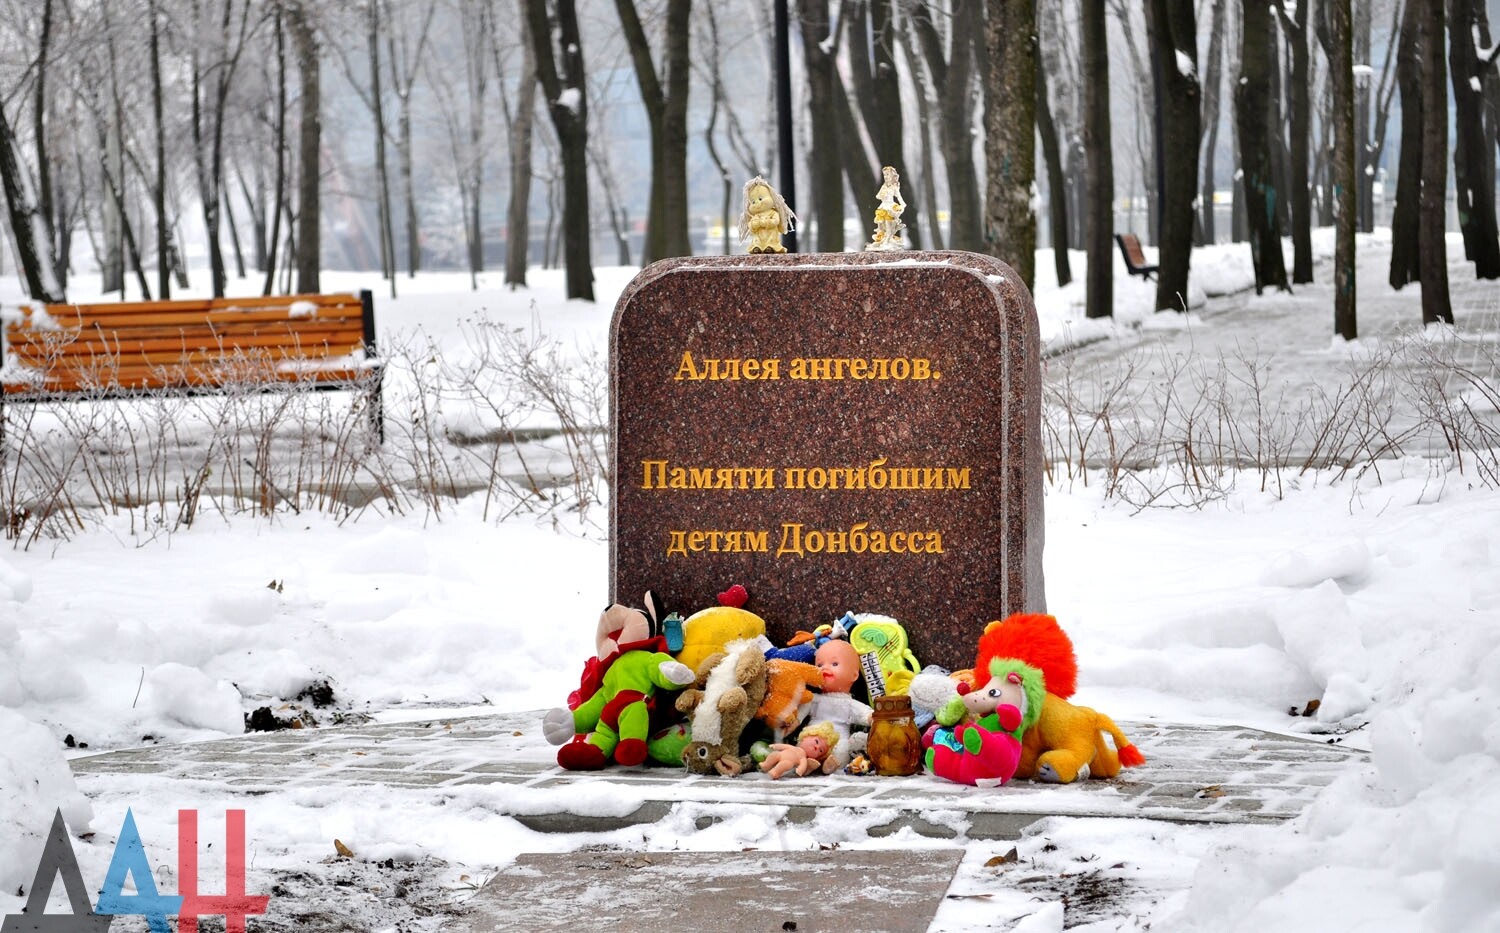 Аллея памяти детей Донбасса ангелов